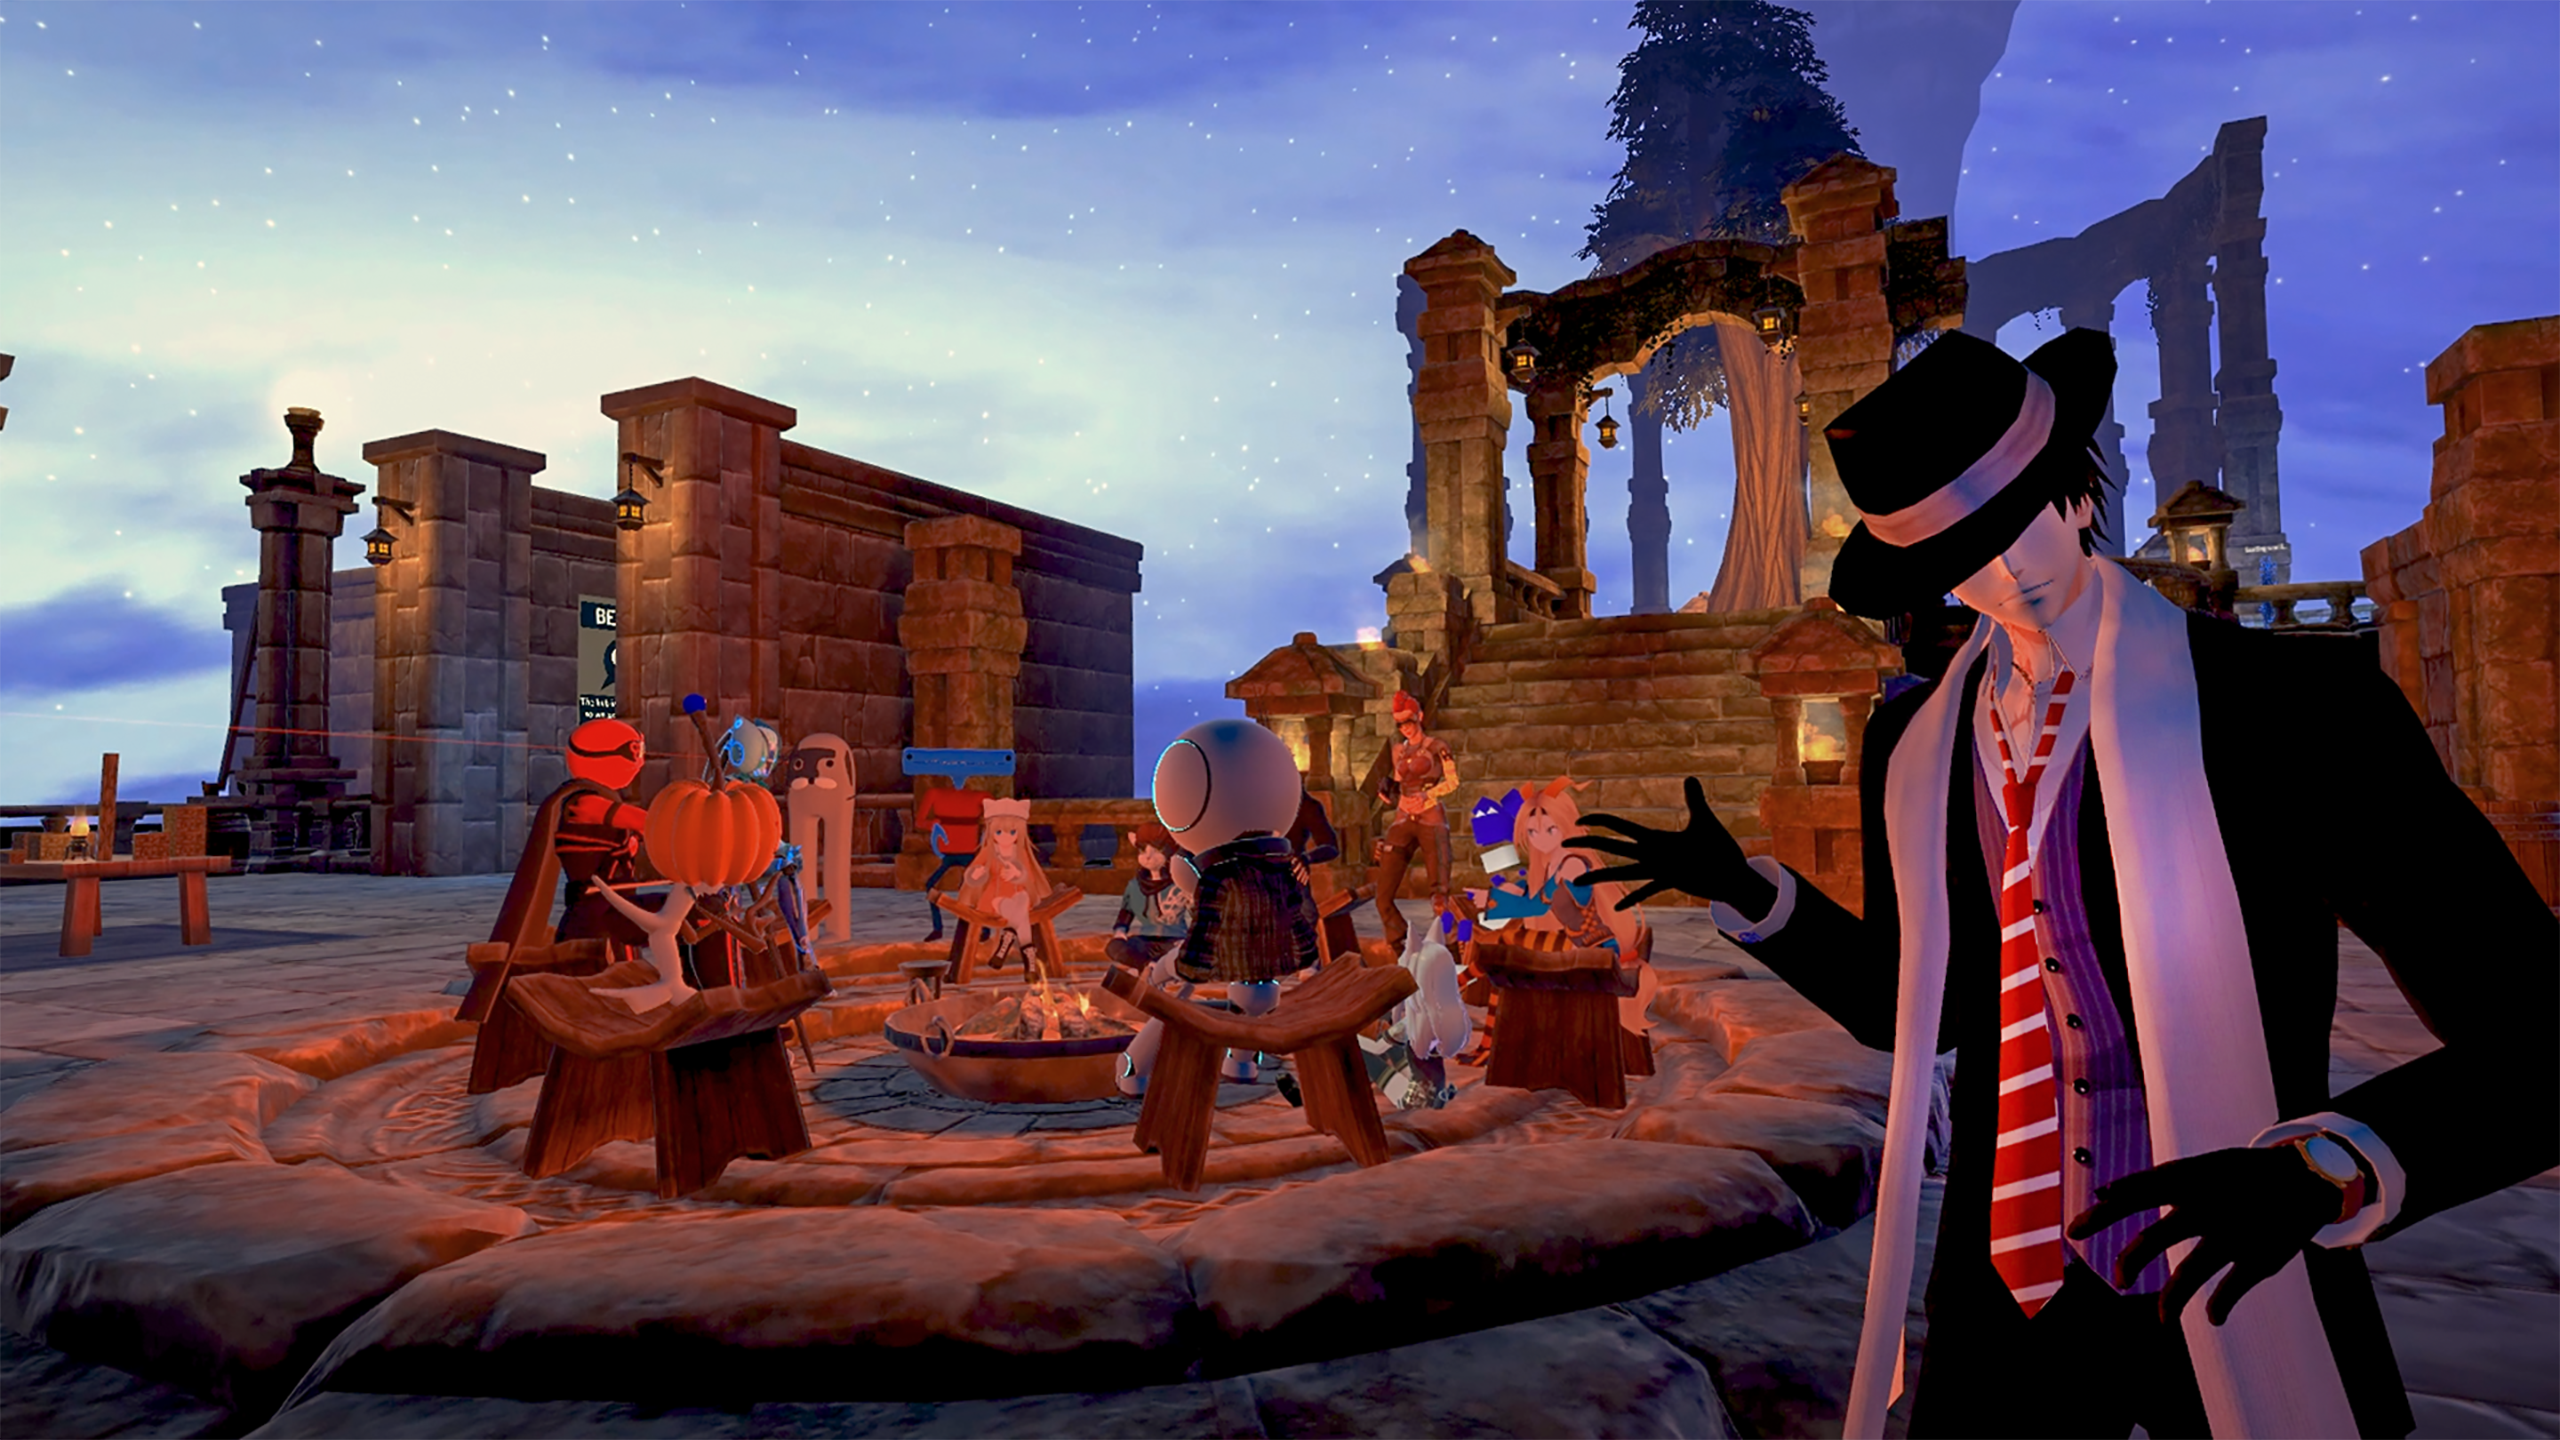 图片展示了一款游戏内场景，其中几个卡通风格的角色围坐在篝火旁，背景是夜空和废墟建筑。